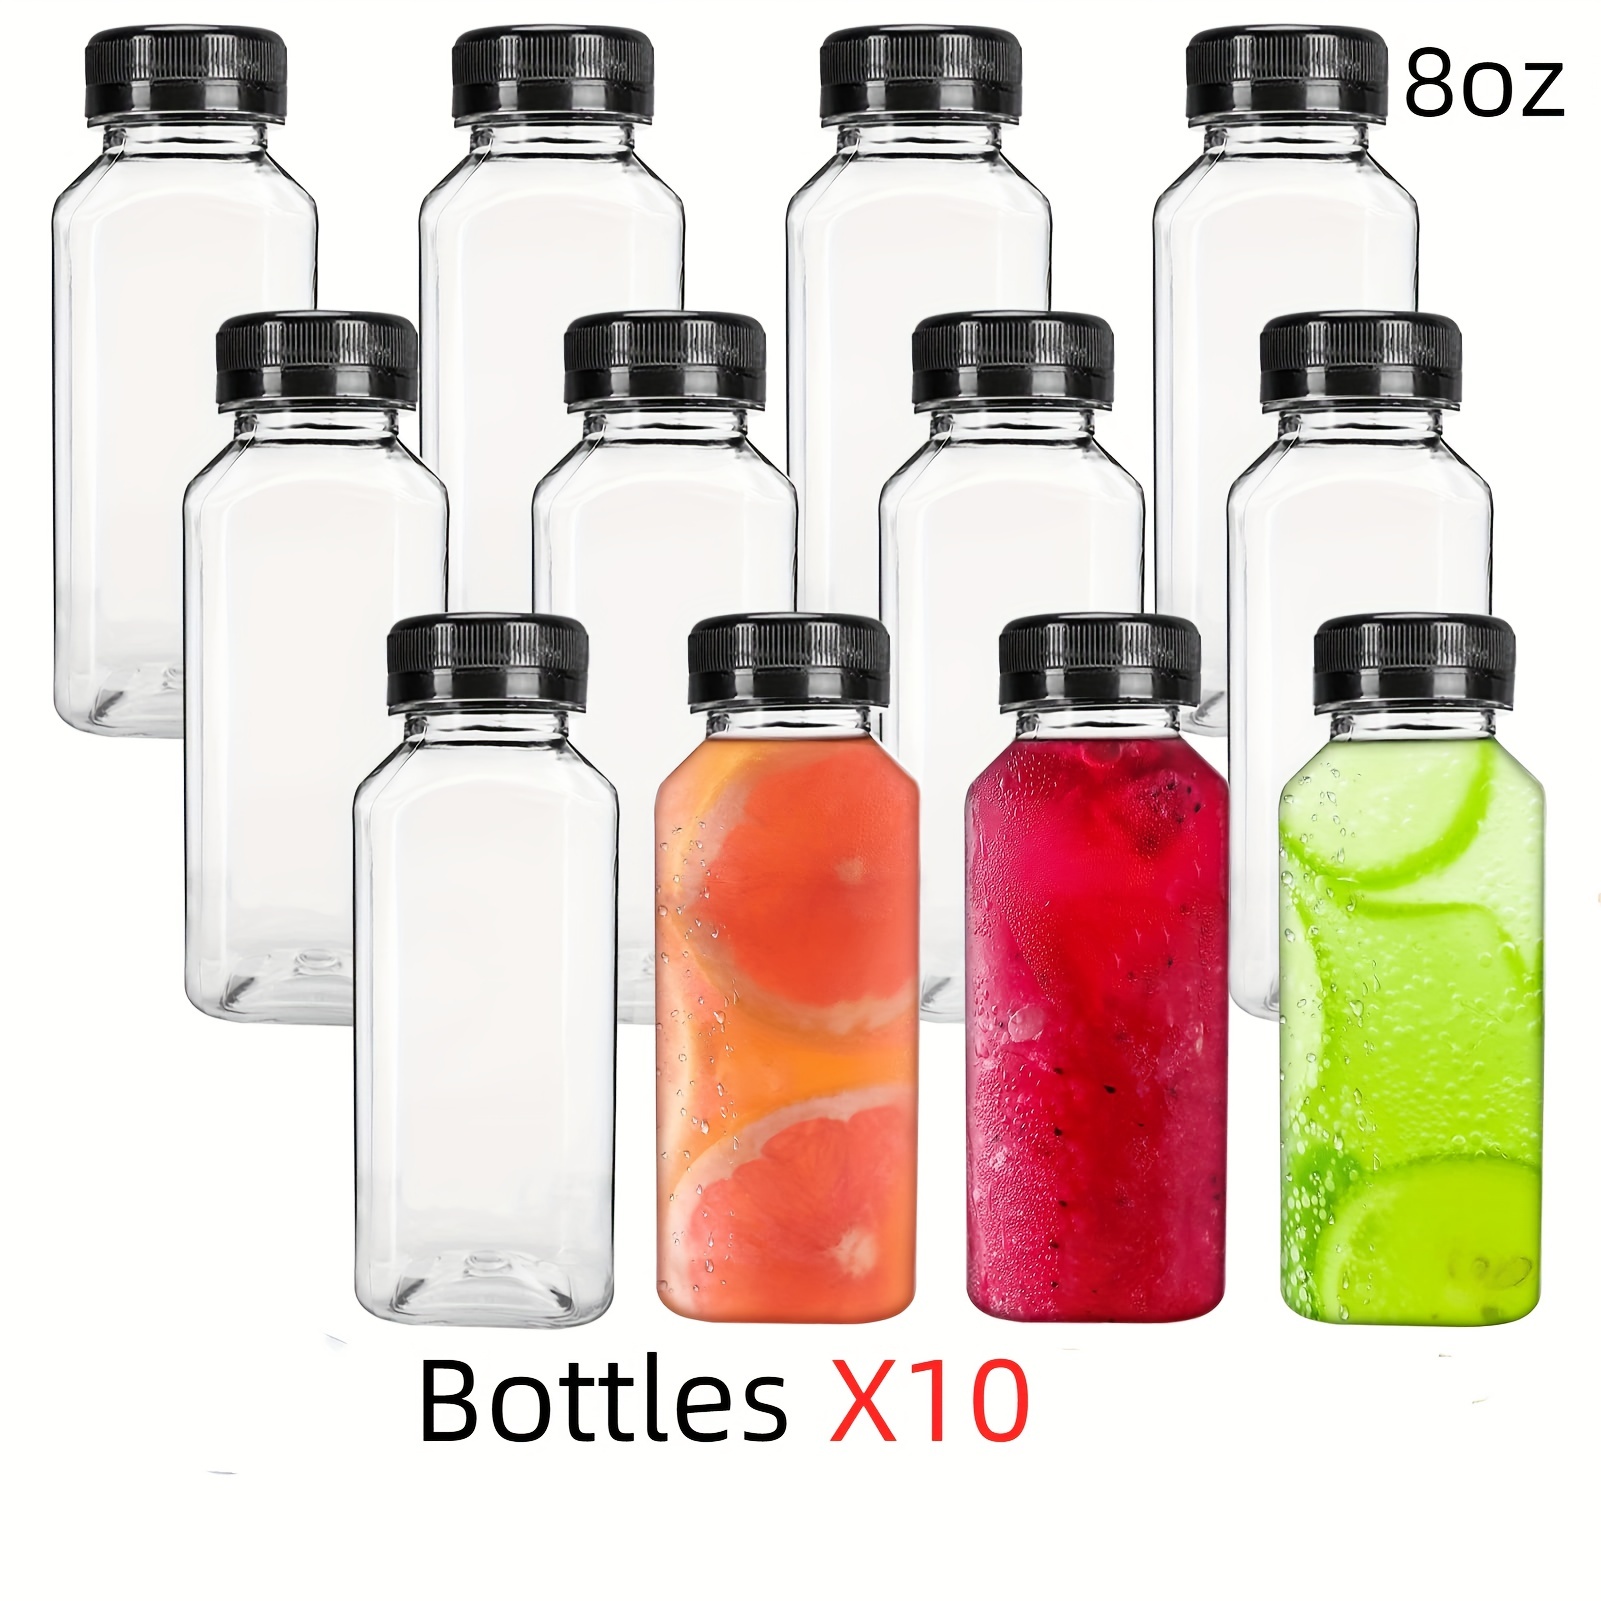 Frcolor Bottles Juice Mini Water Fridge Containers Box Juicing Lids  Refillable Empty Clear Reusable Shot Caps Oz 4 Small Bottle